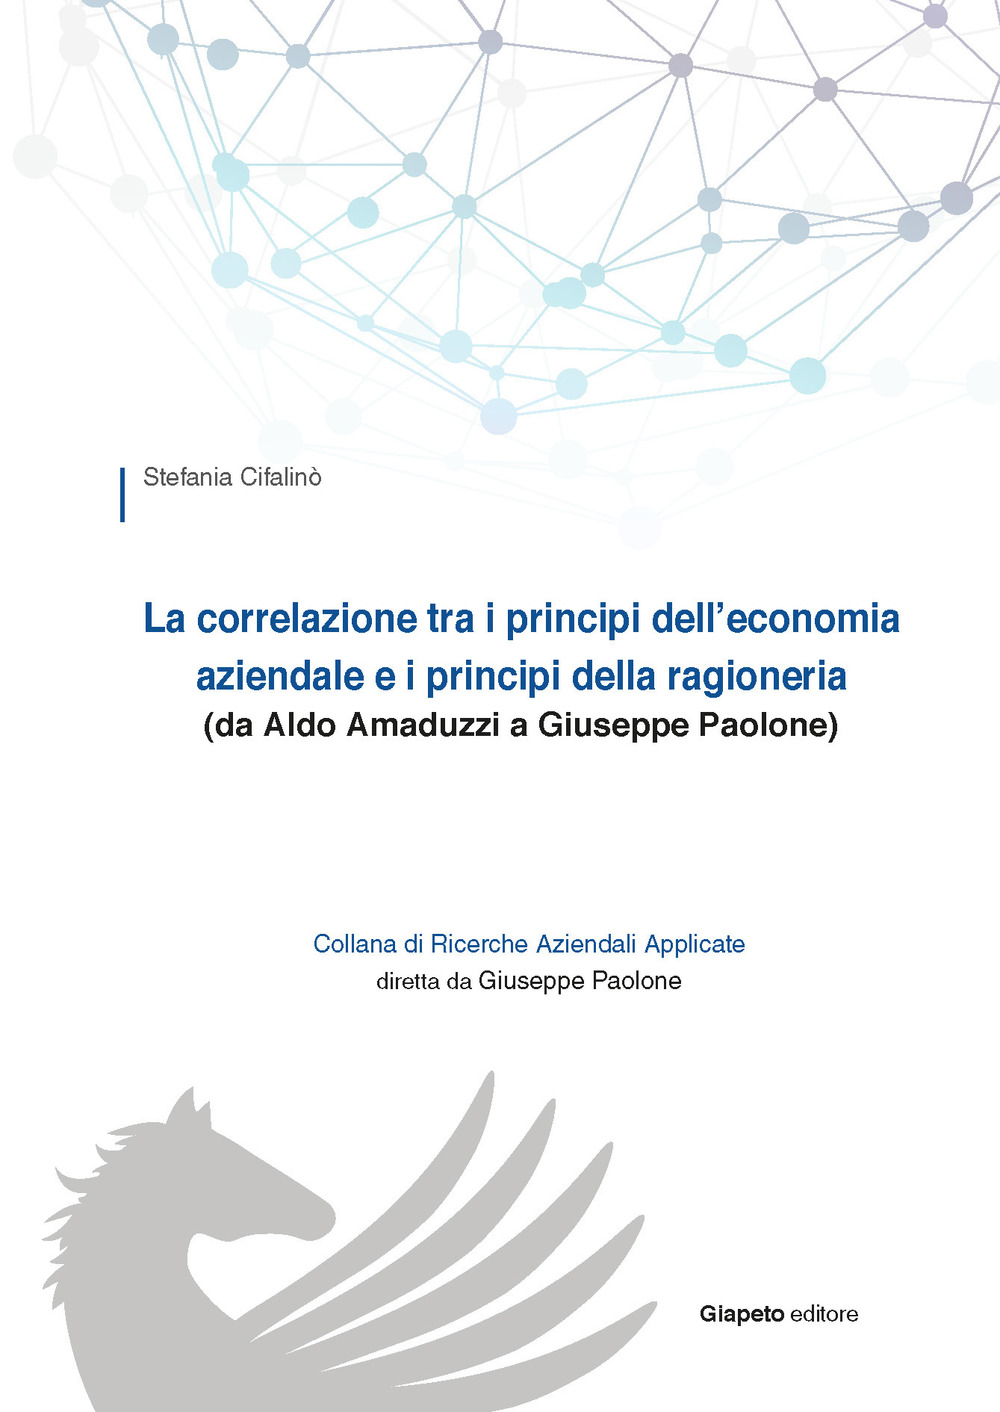 Image of La correlazione tra i principi dell'economia aziendale e i principi della ragioneria (da Aldo Amaduzzi a Giuseppe Paolone)